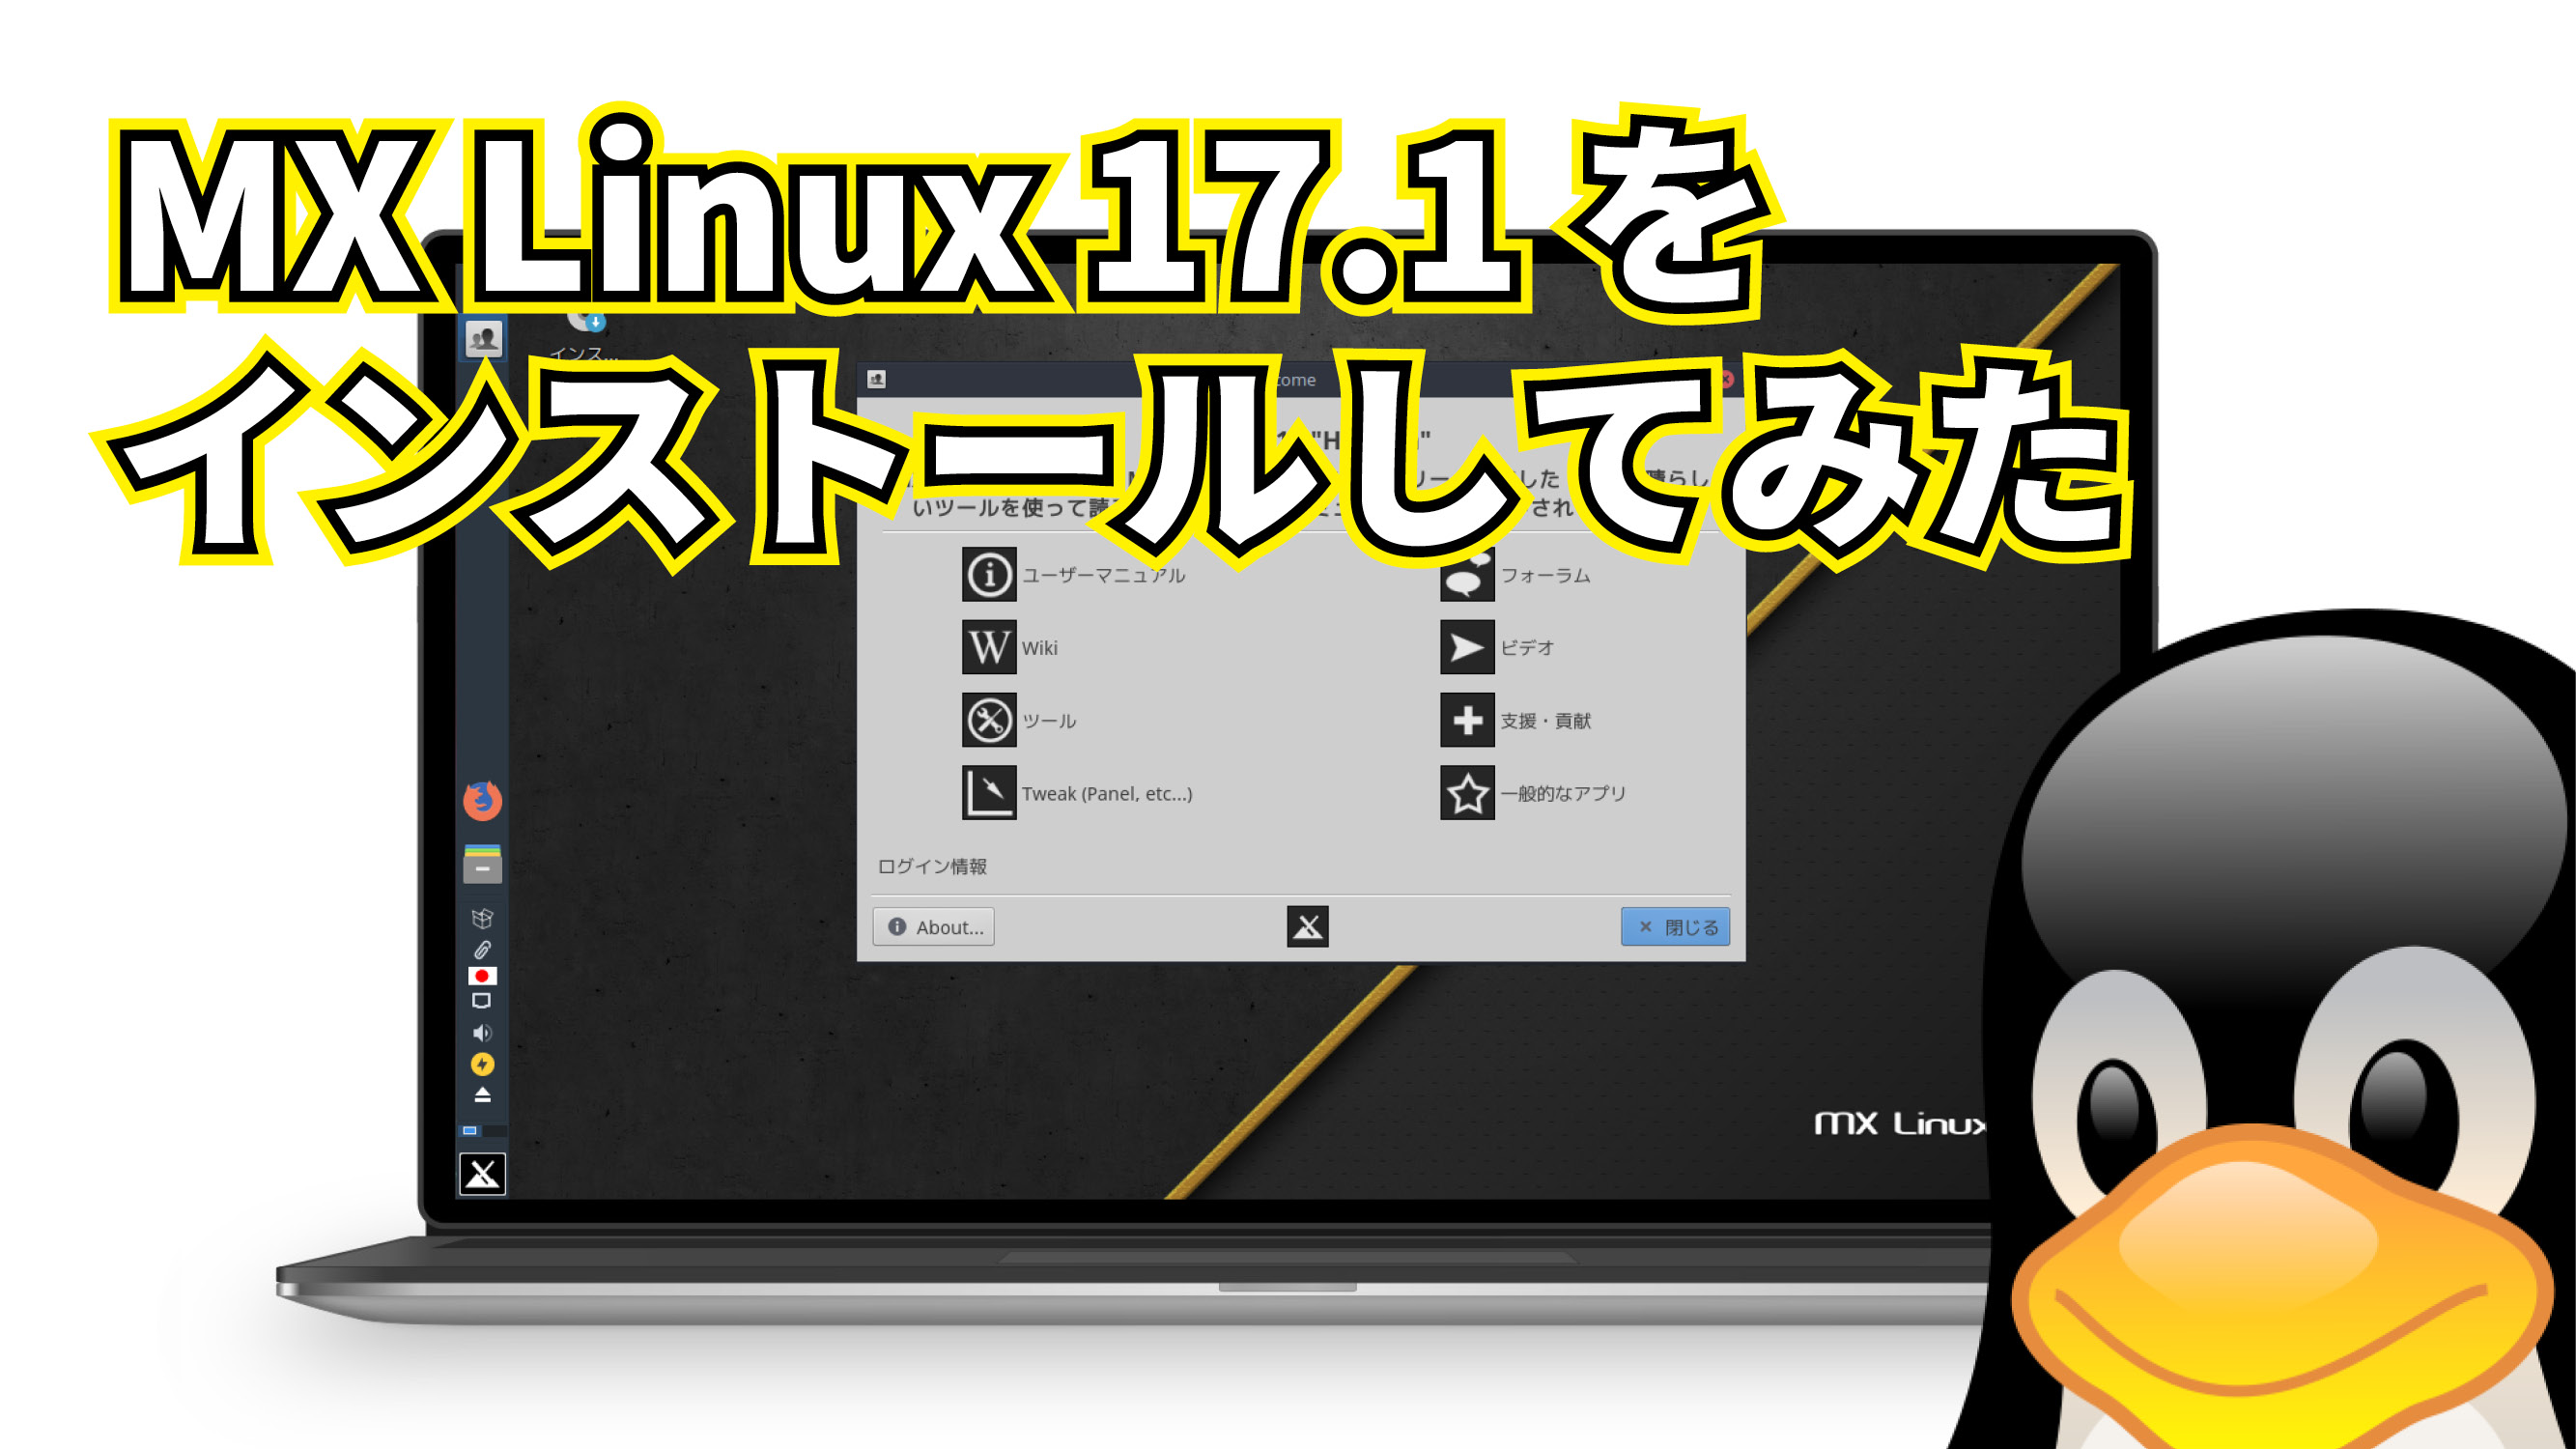 MX Linux 17.1 をインストールしてみた